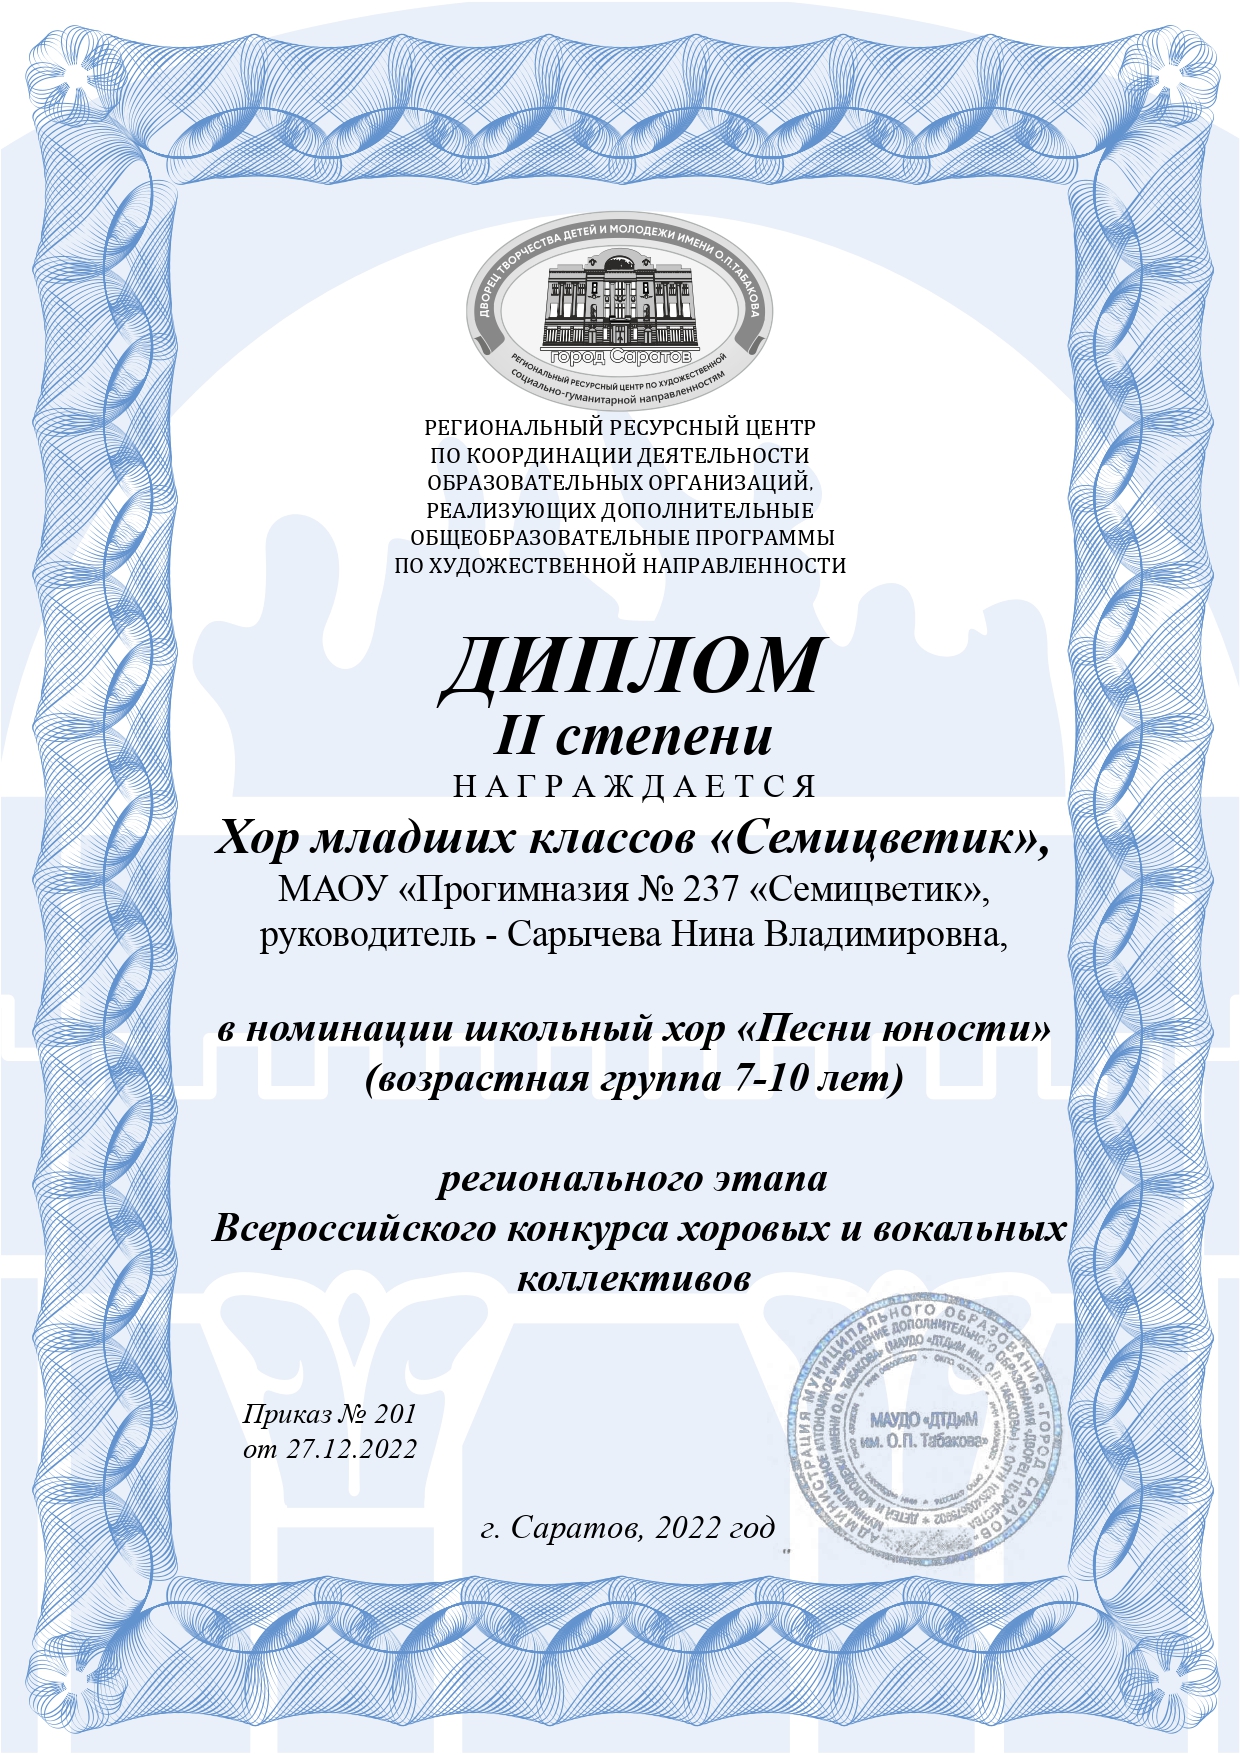 Диплом 2 степени регионального этапа Всероссийского конкурса хоровых и вокальных коллективов